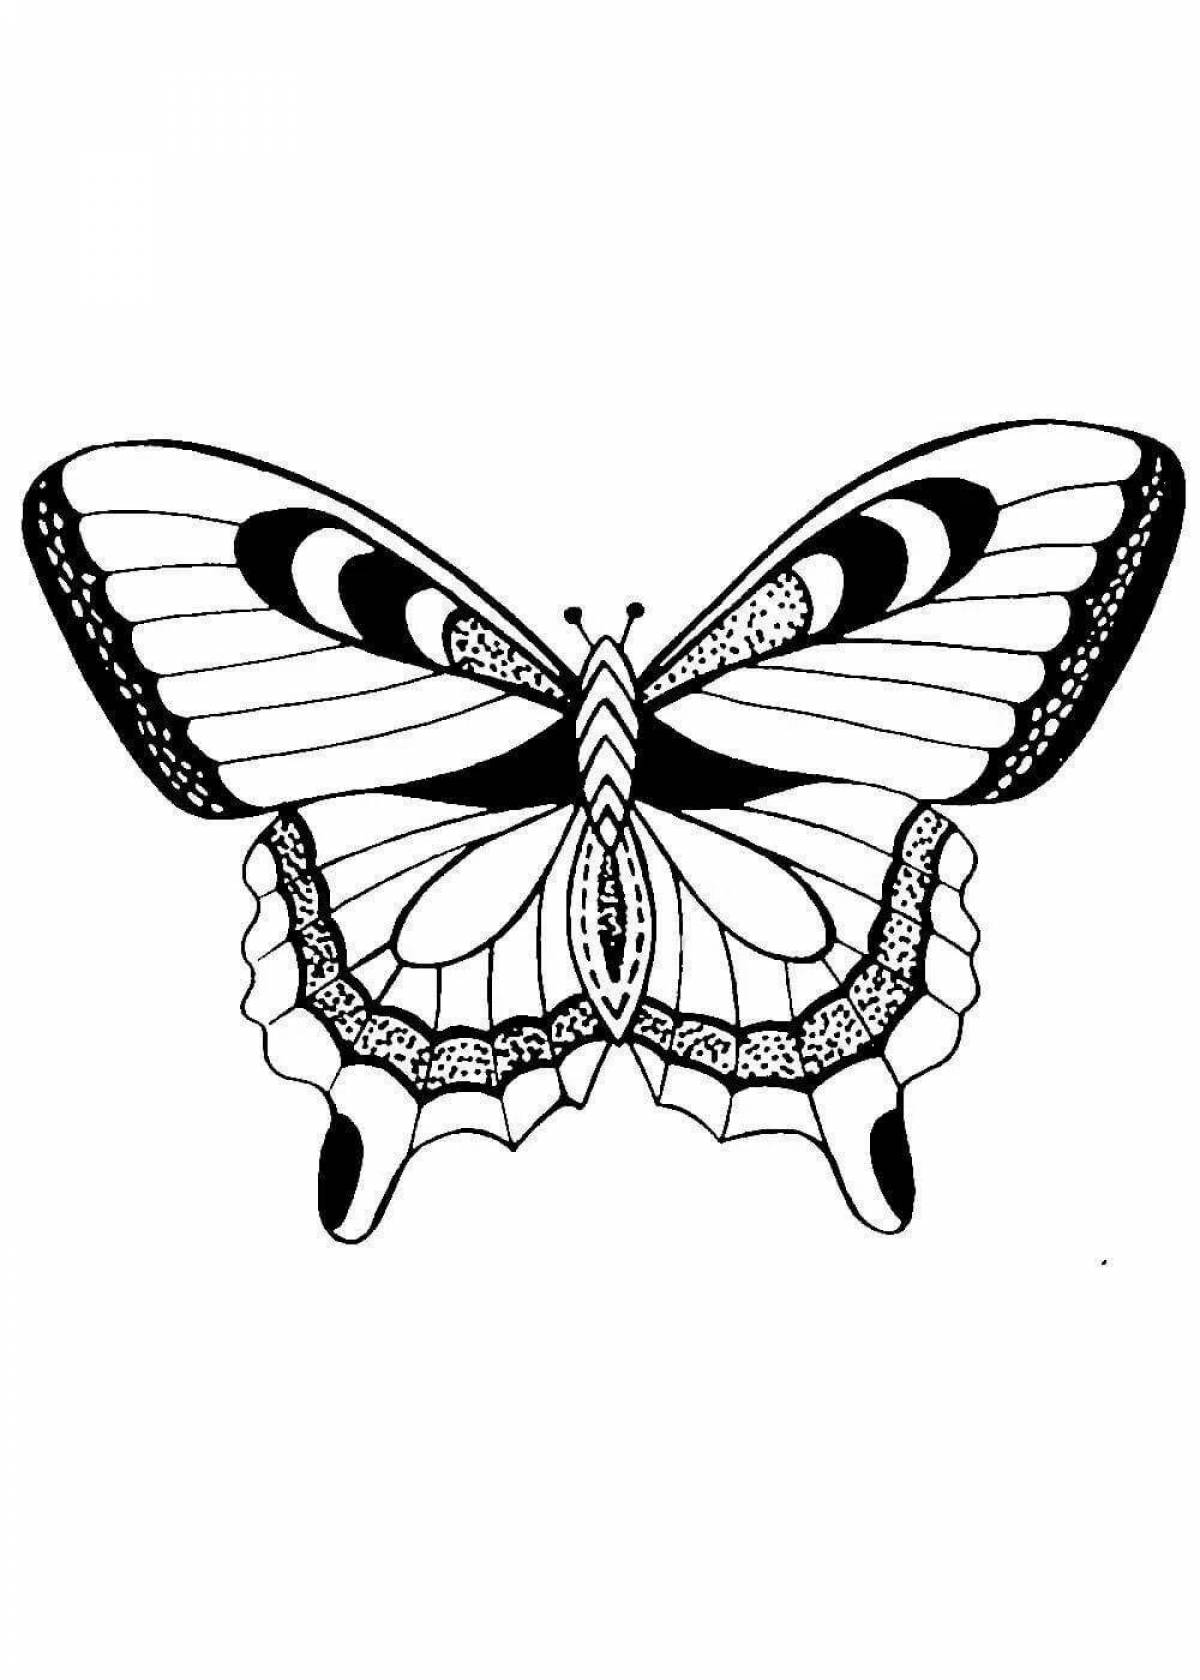 Яркая трафаретная раскраска бабочки